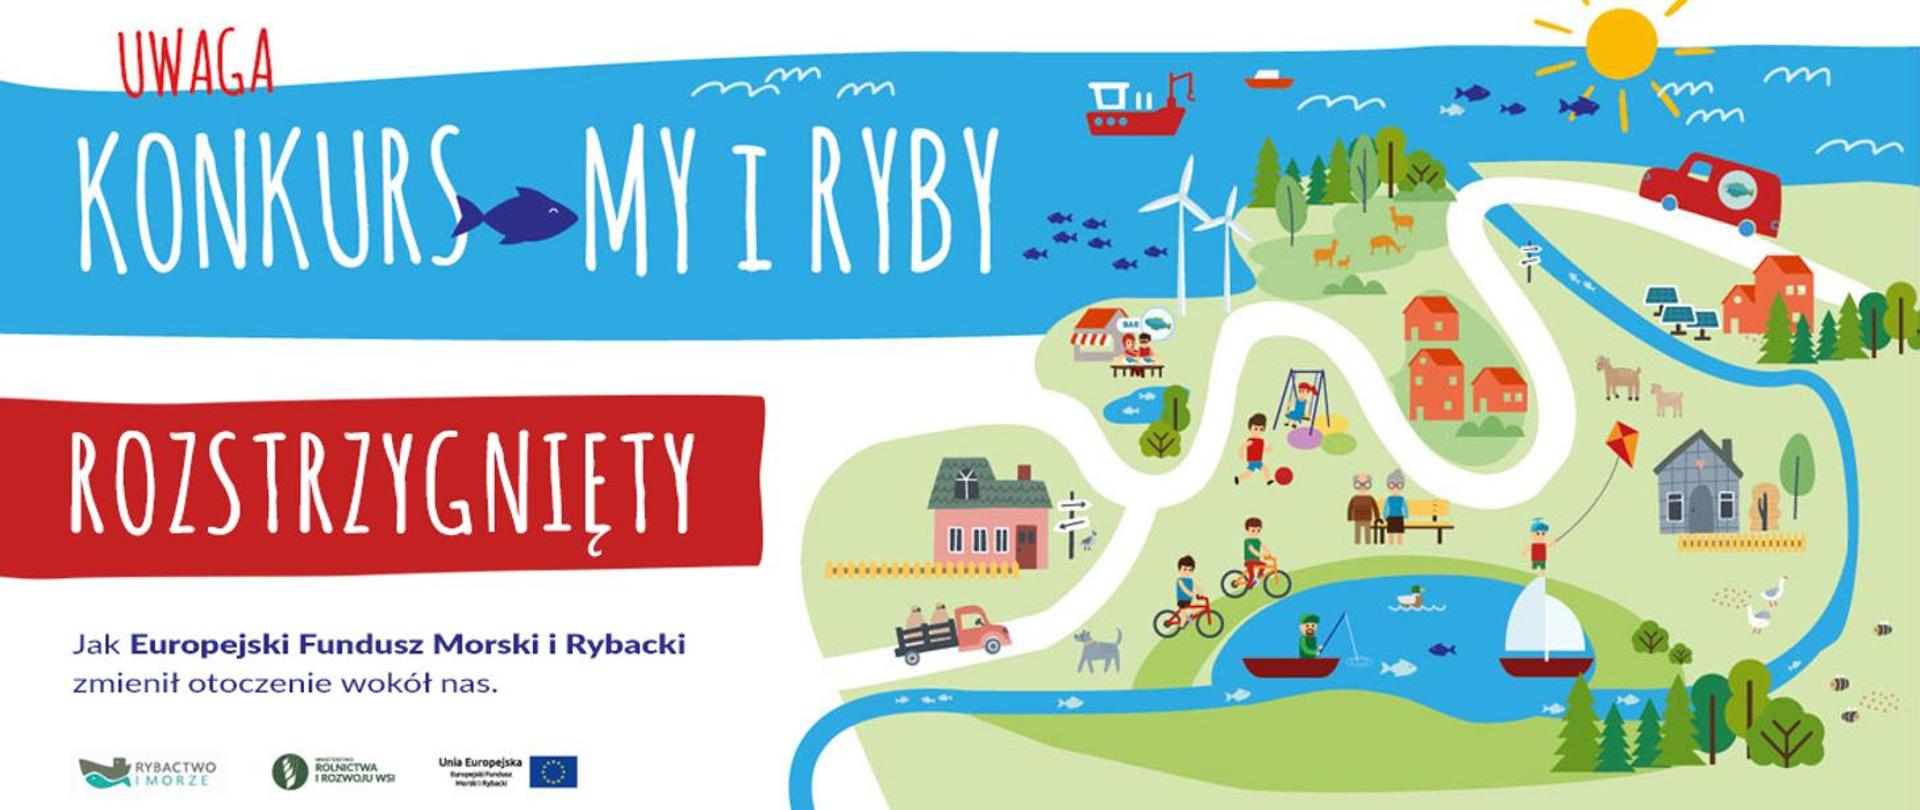 Infografika - My i RYBY - jak Europejski Fundusz Morski i Rybacki zmienił otoczenie wokół nas